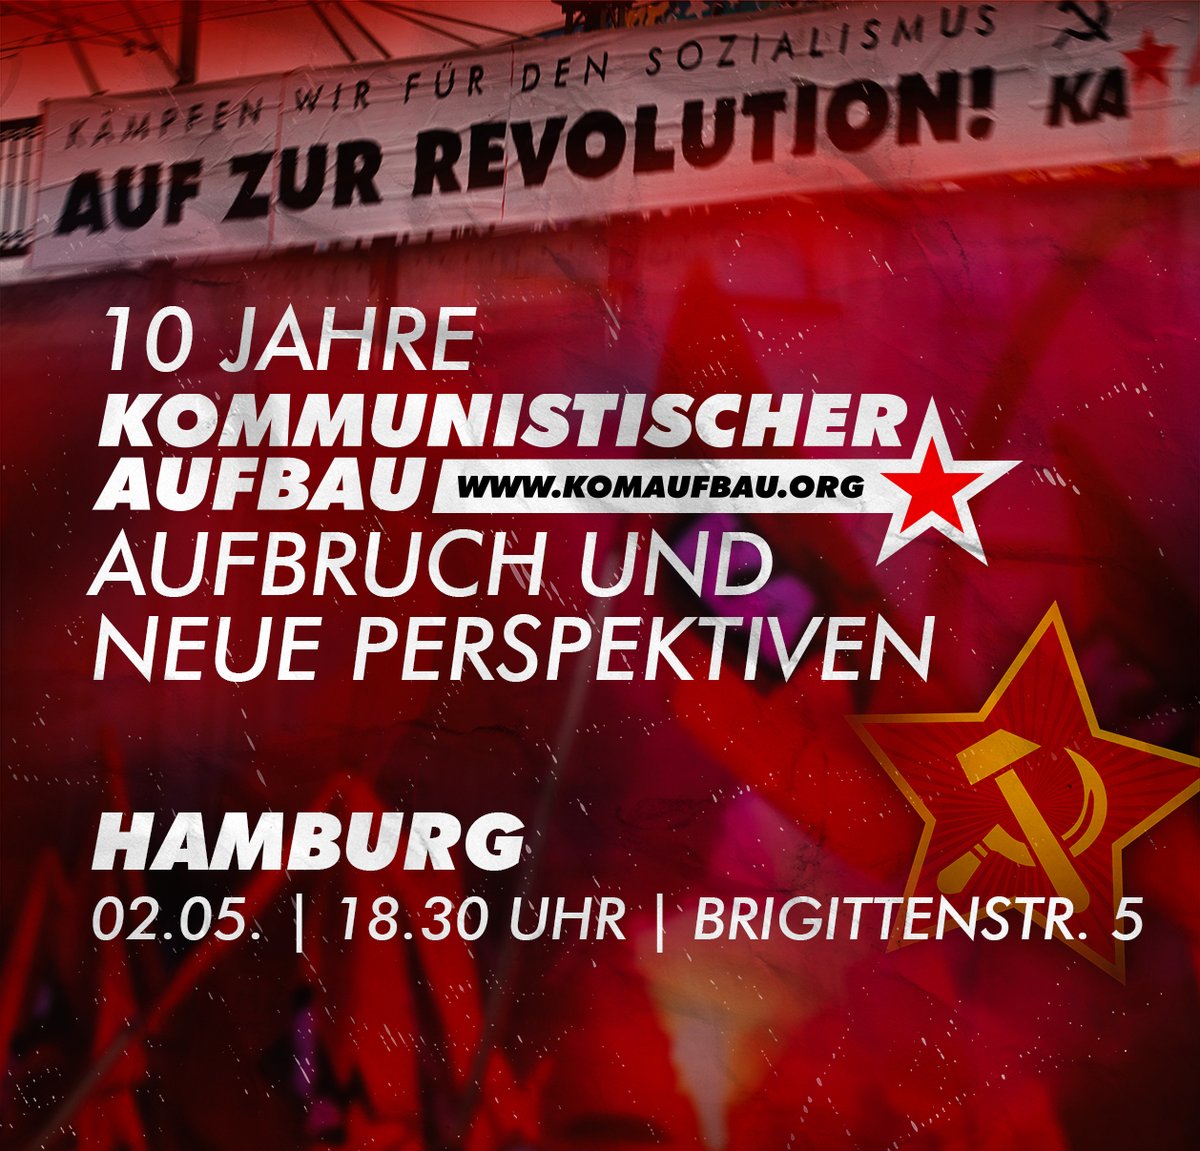 10 Jahre #KommunistischerAufbau: Aufbruch und neue Perspektiven - Kommt zu unserem Vortrag in #Hamburg: